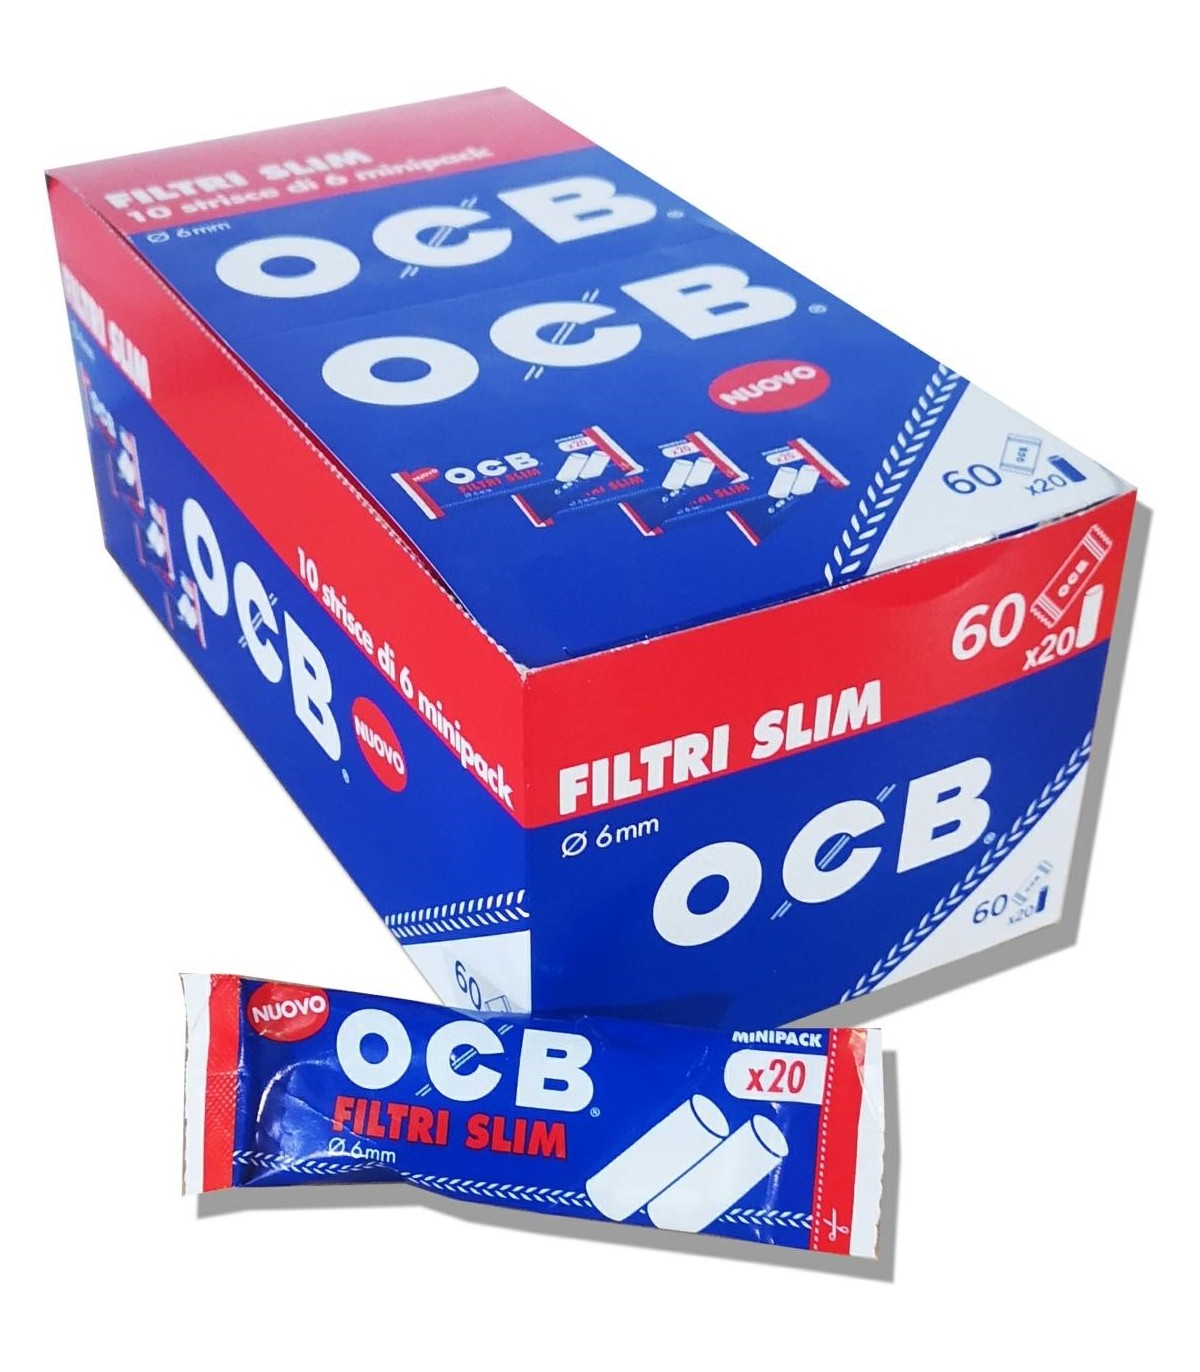 Filtri OCB slim 6mm. in bustina conf. 60 bustine da 20 filtri